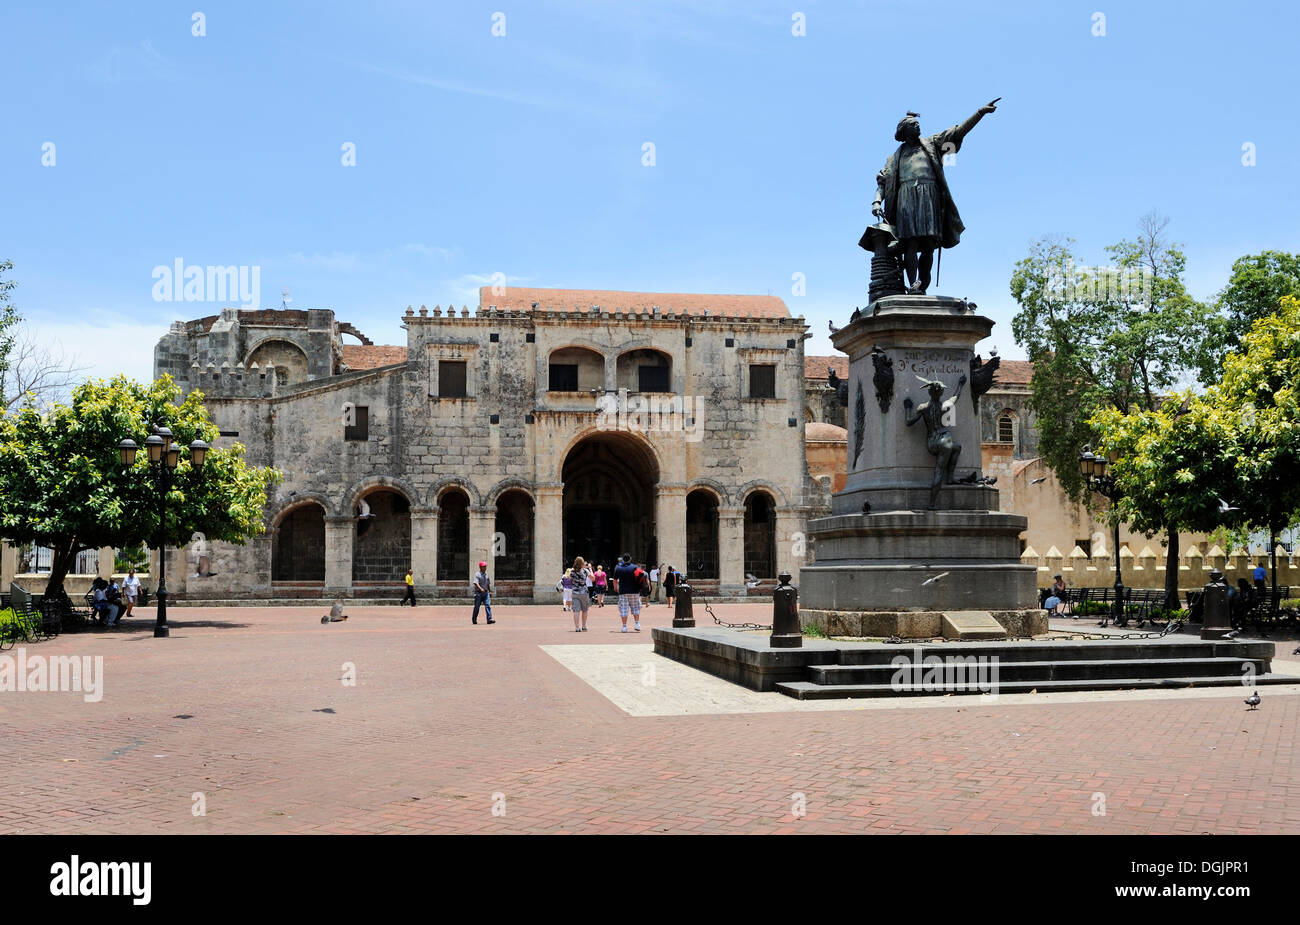 Plaza Place Colon avec Statue de Columbus et de la cathédrale Santa Maria la Menor, la plus ancienne cathédrale du Nouveau Monde, 1532 Banque D'Images